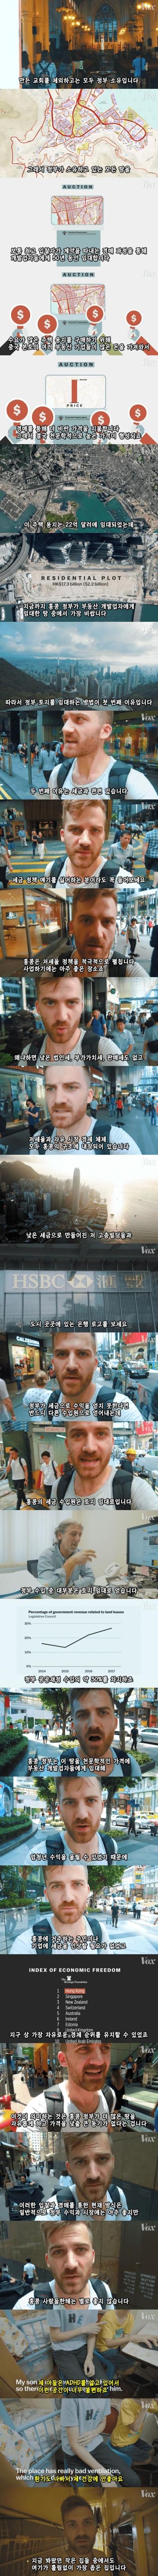 극악한 홍콩의 집값